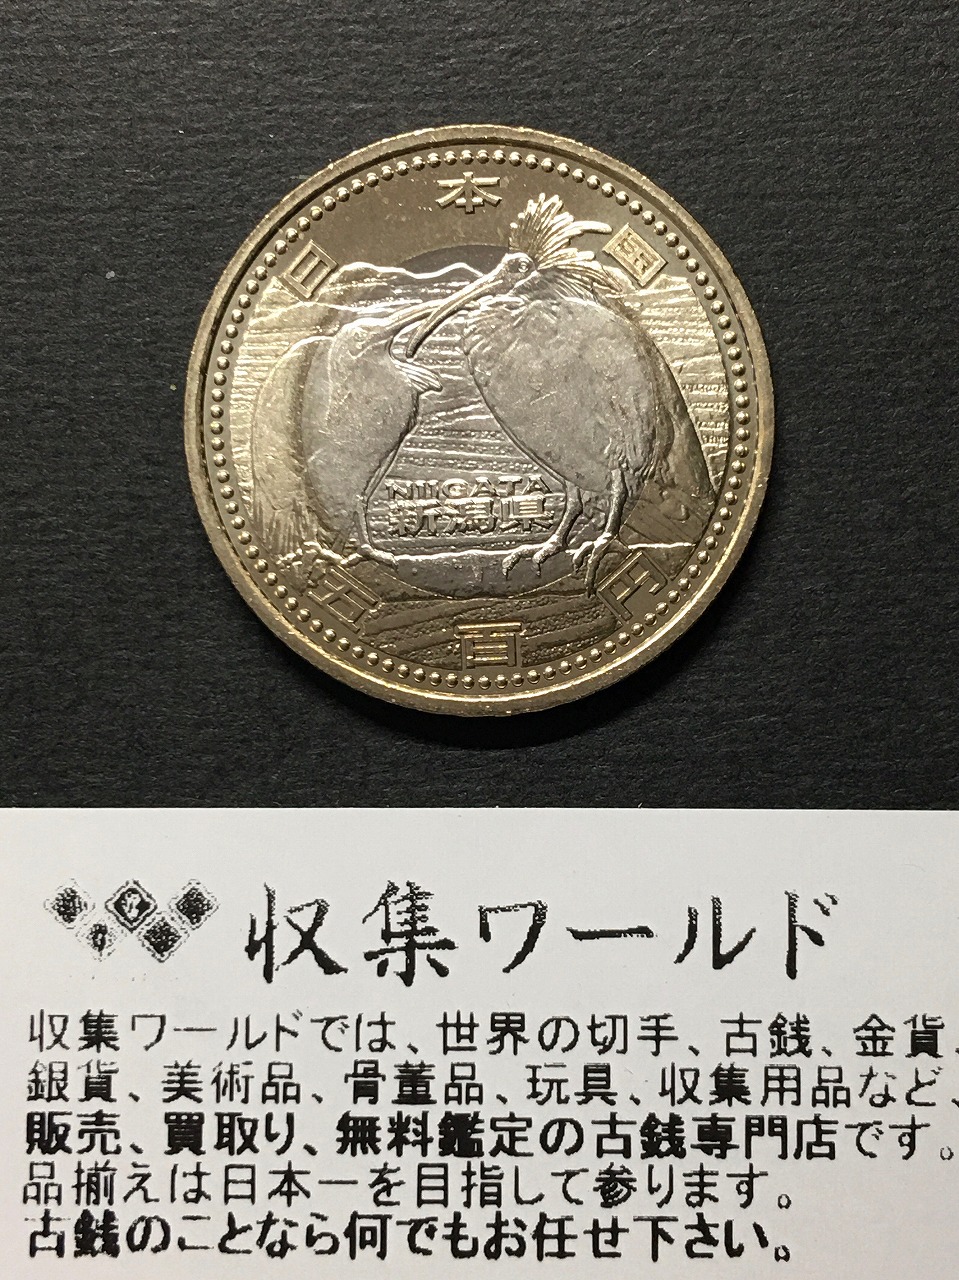 地方自治法施行六十周年記念500円貨幣収納バインダー画像で確認よろしくお願いします